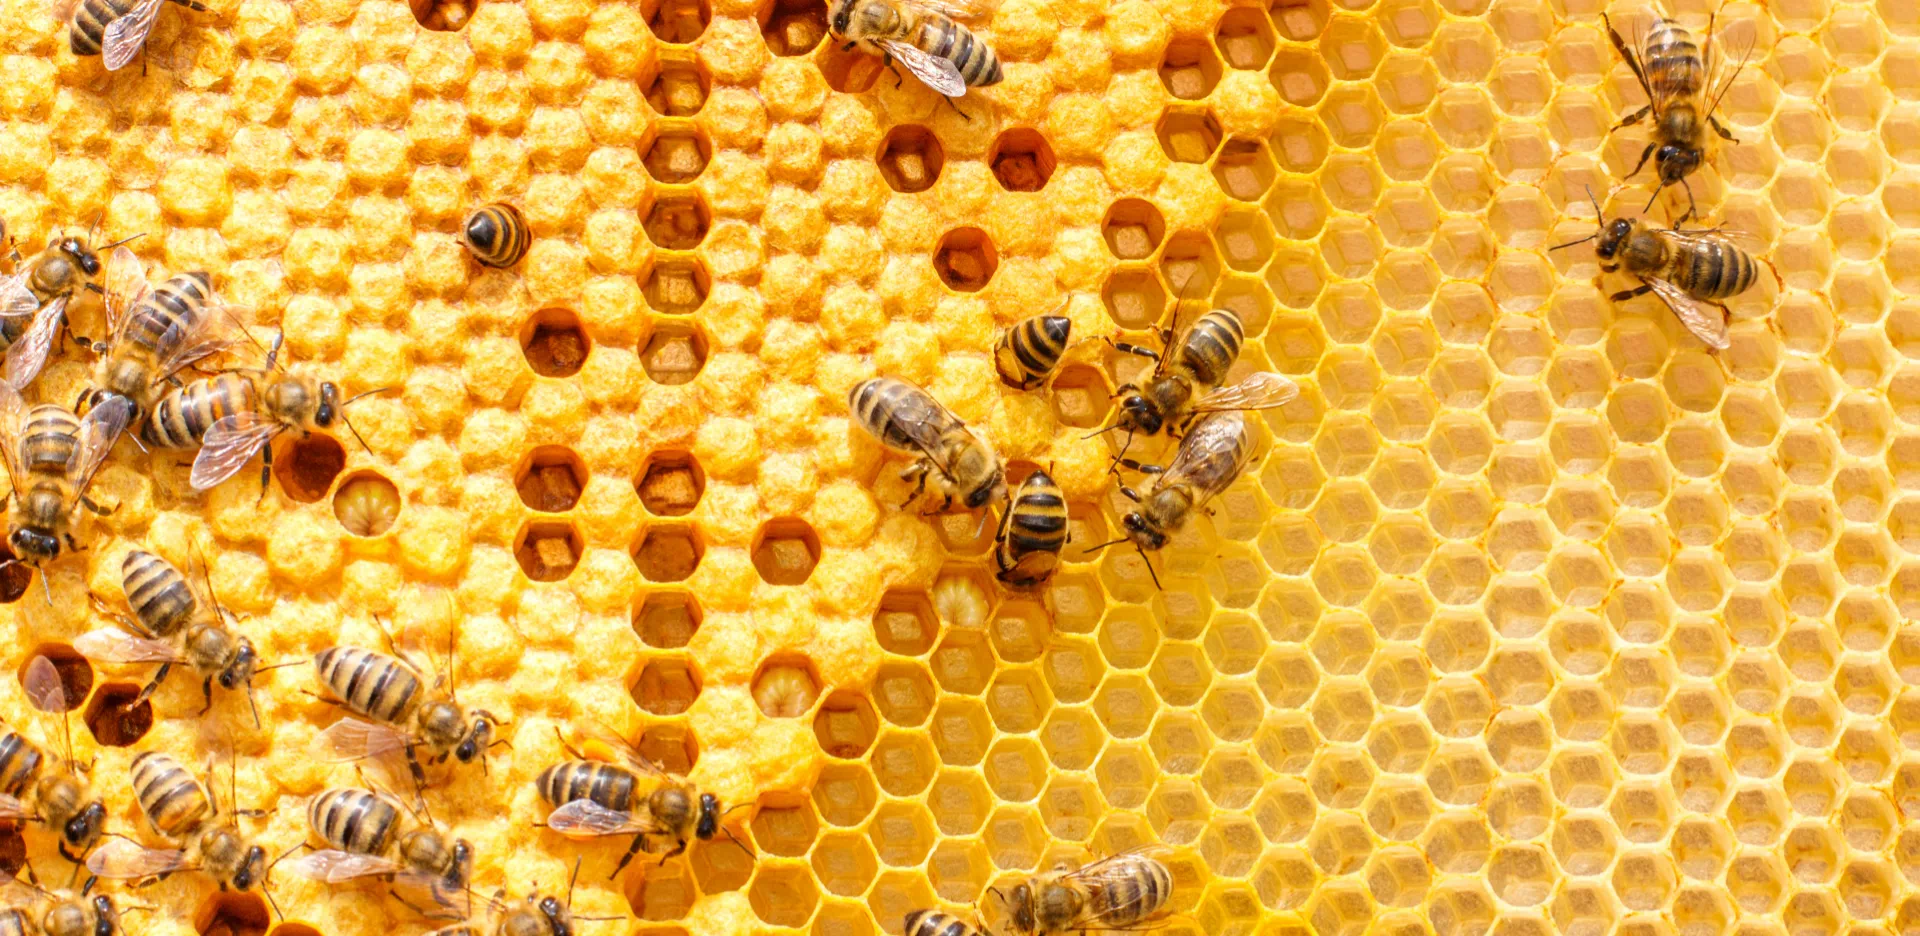 plaster miodu po którym chodzą pszczoły